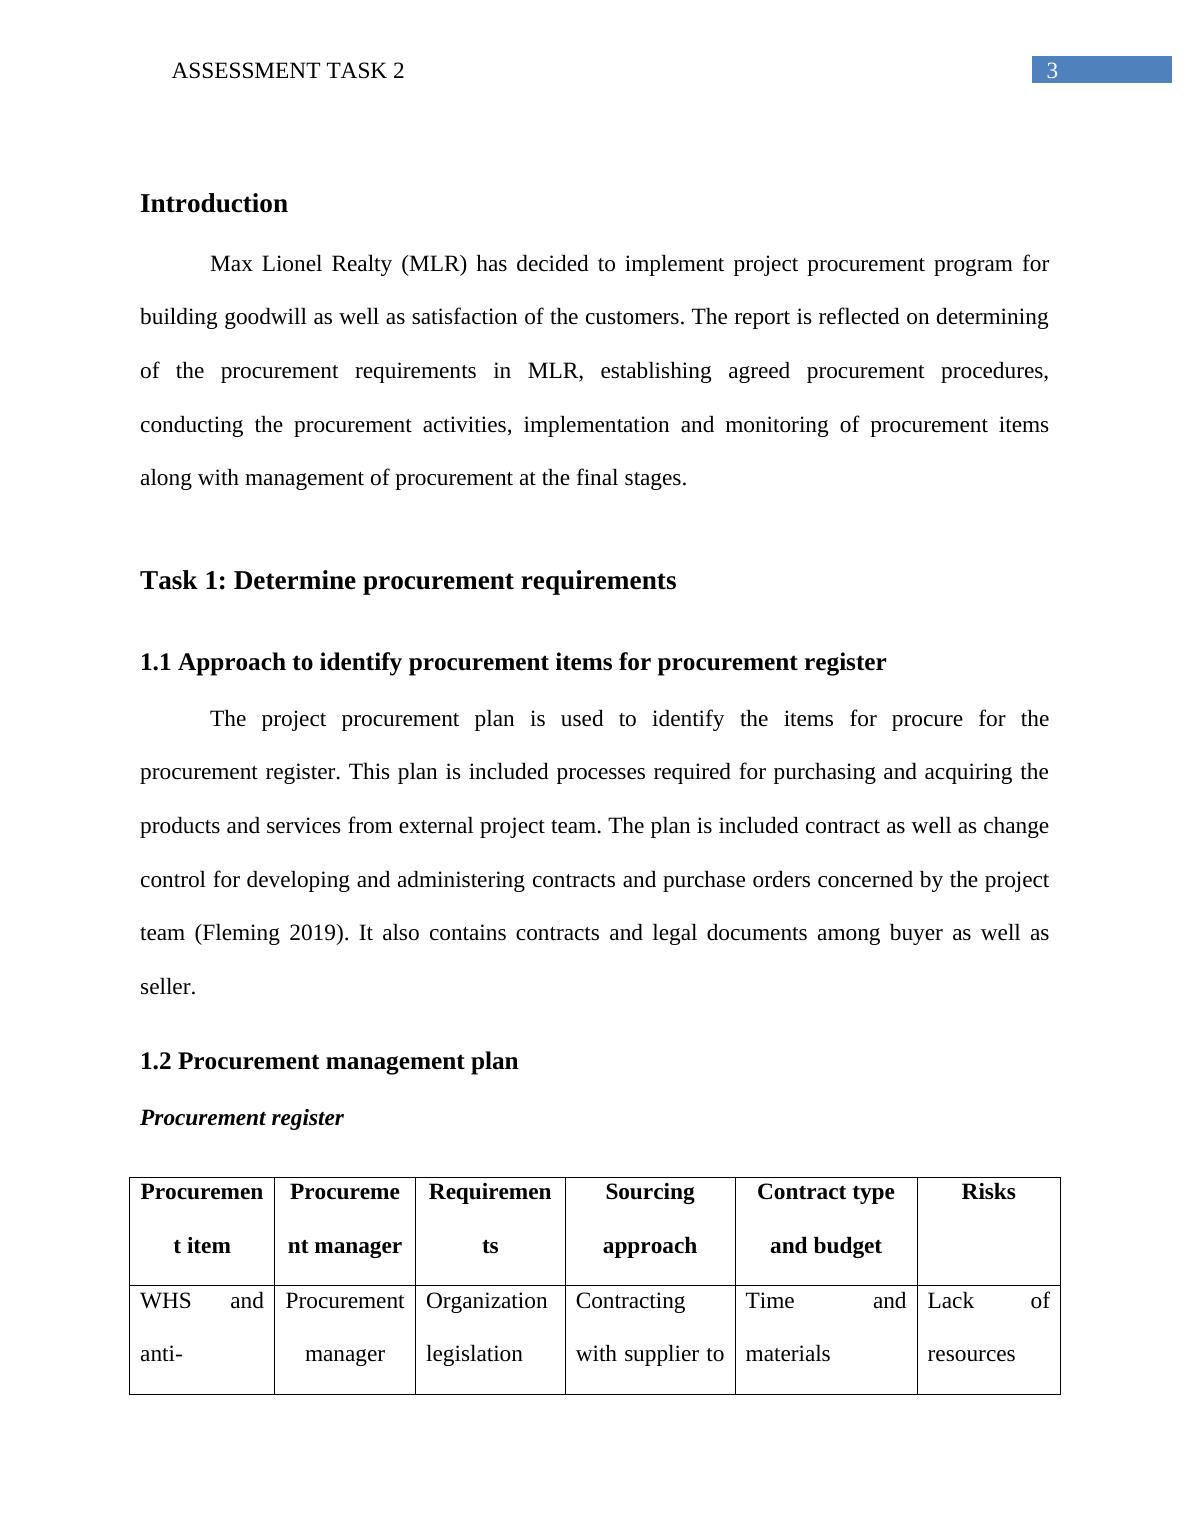 Project Procurement Management Plan_4